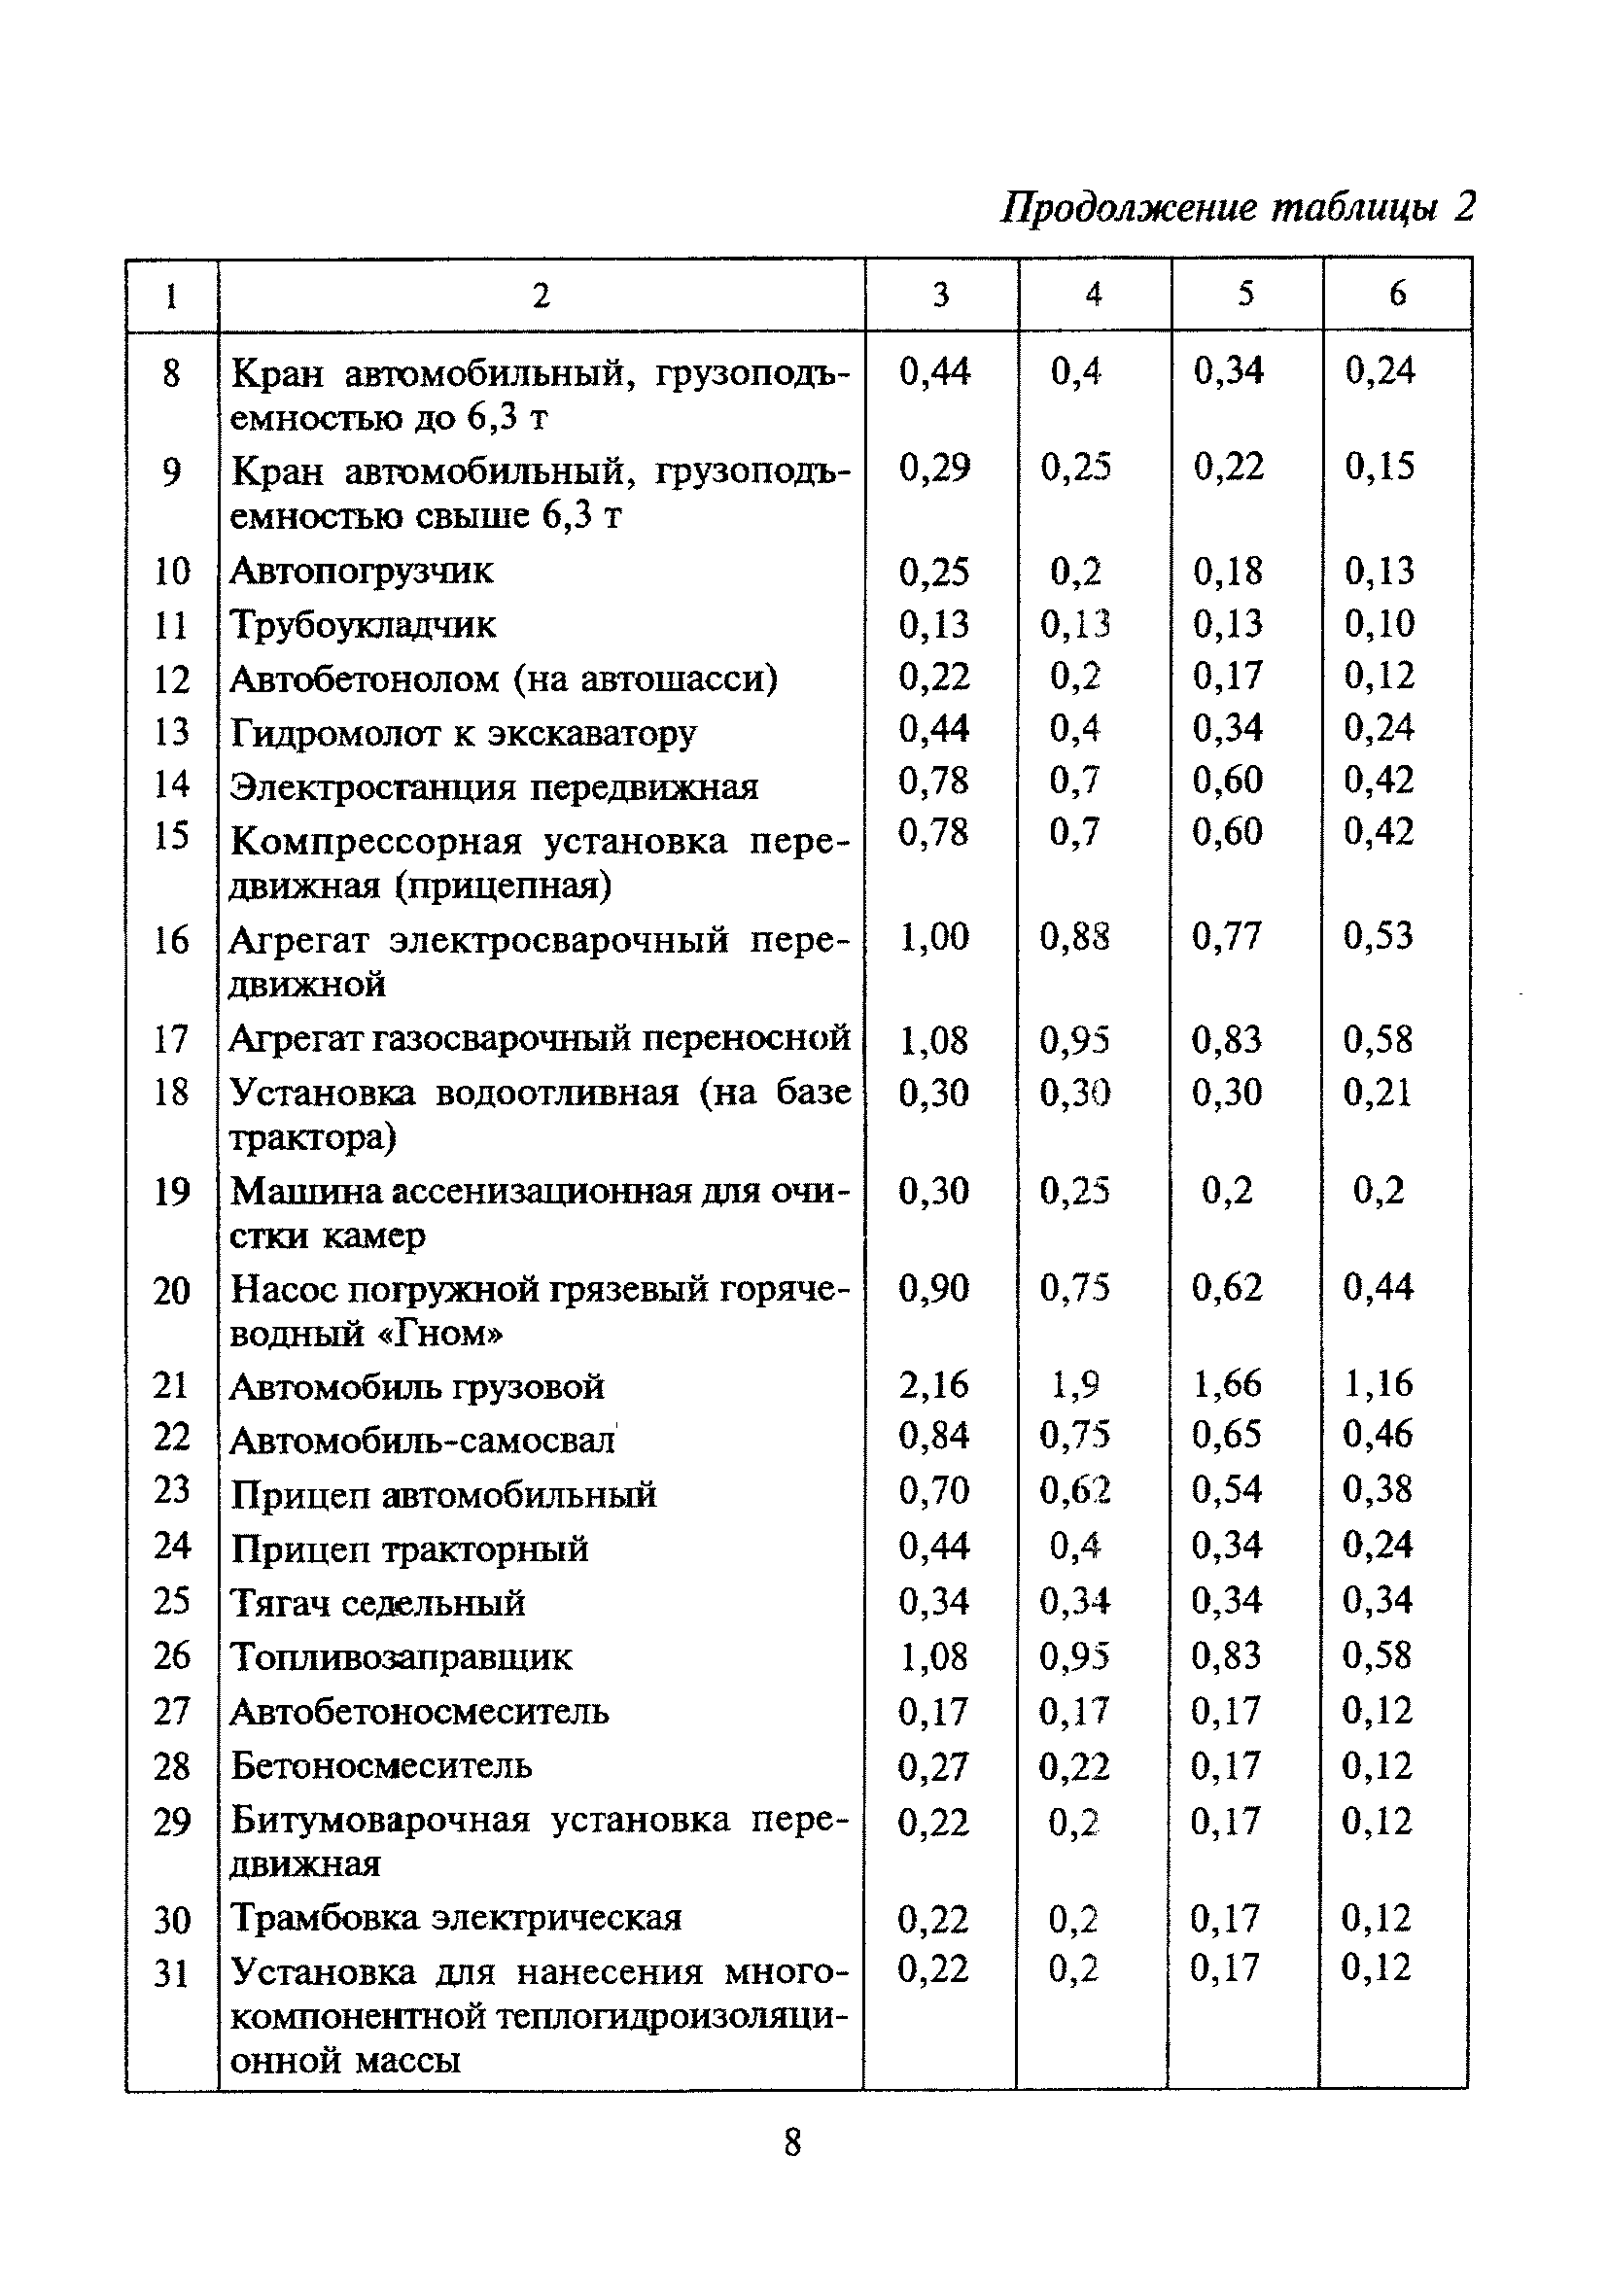 МДС 13-16.2000